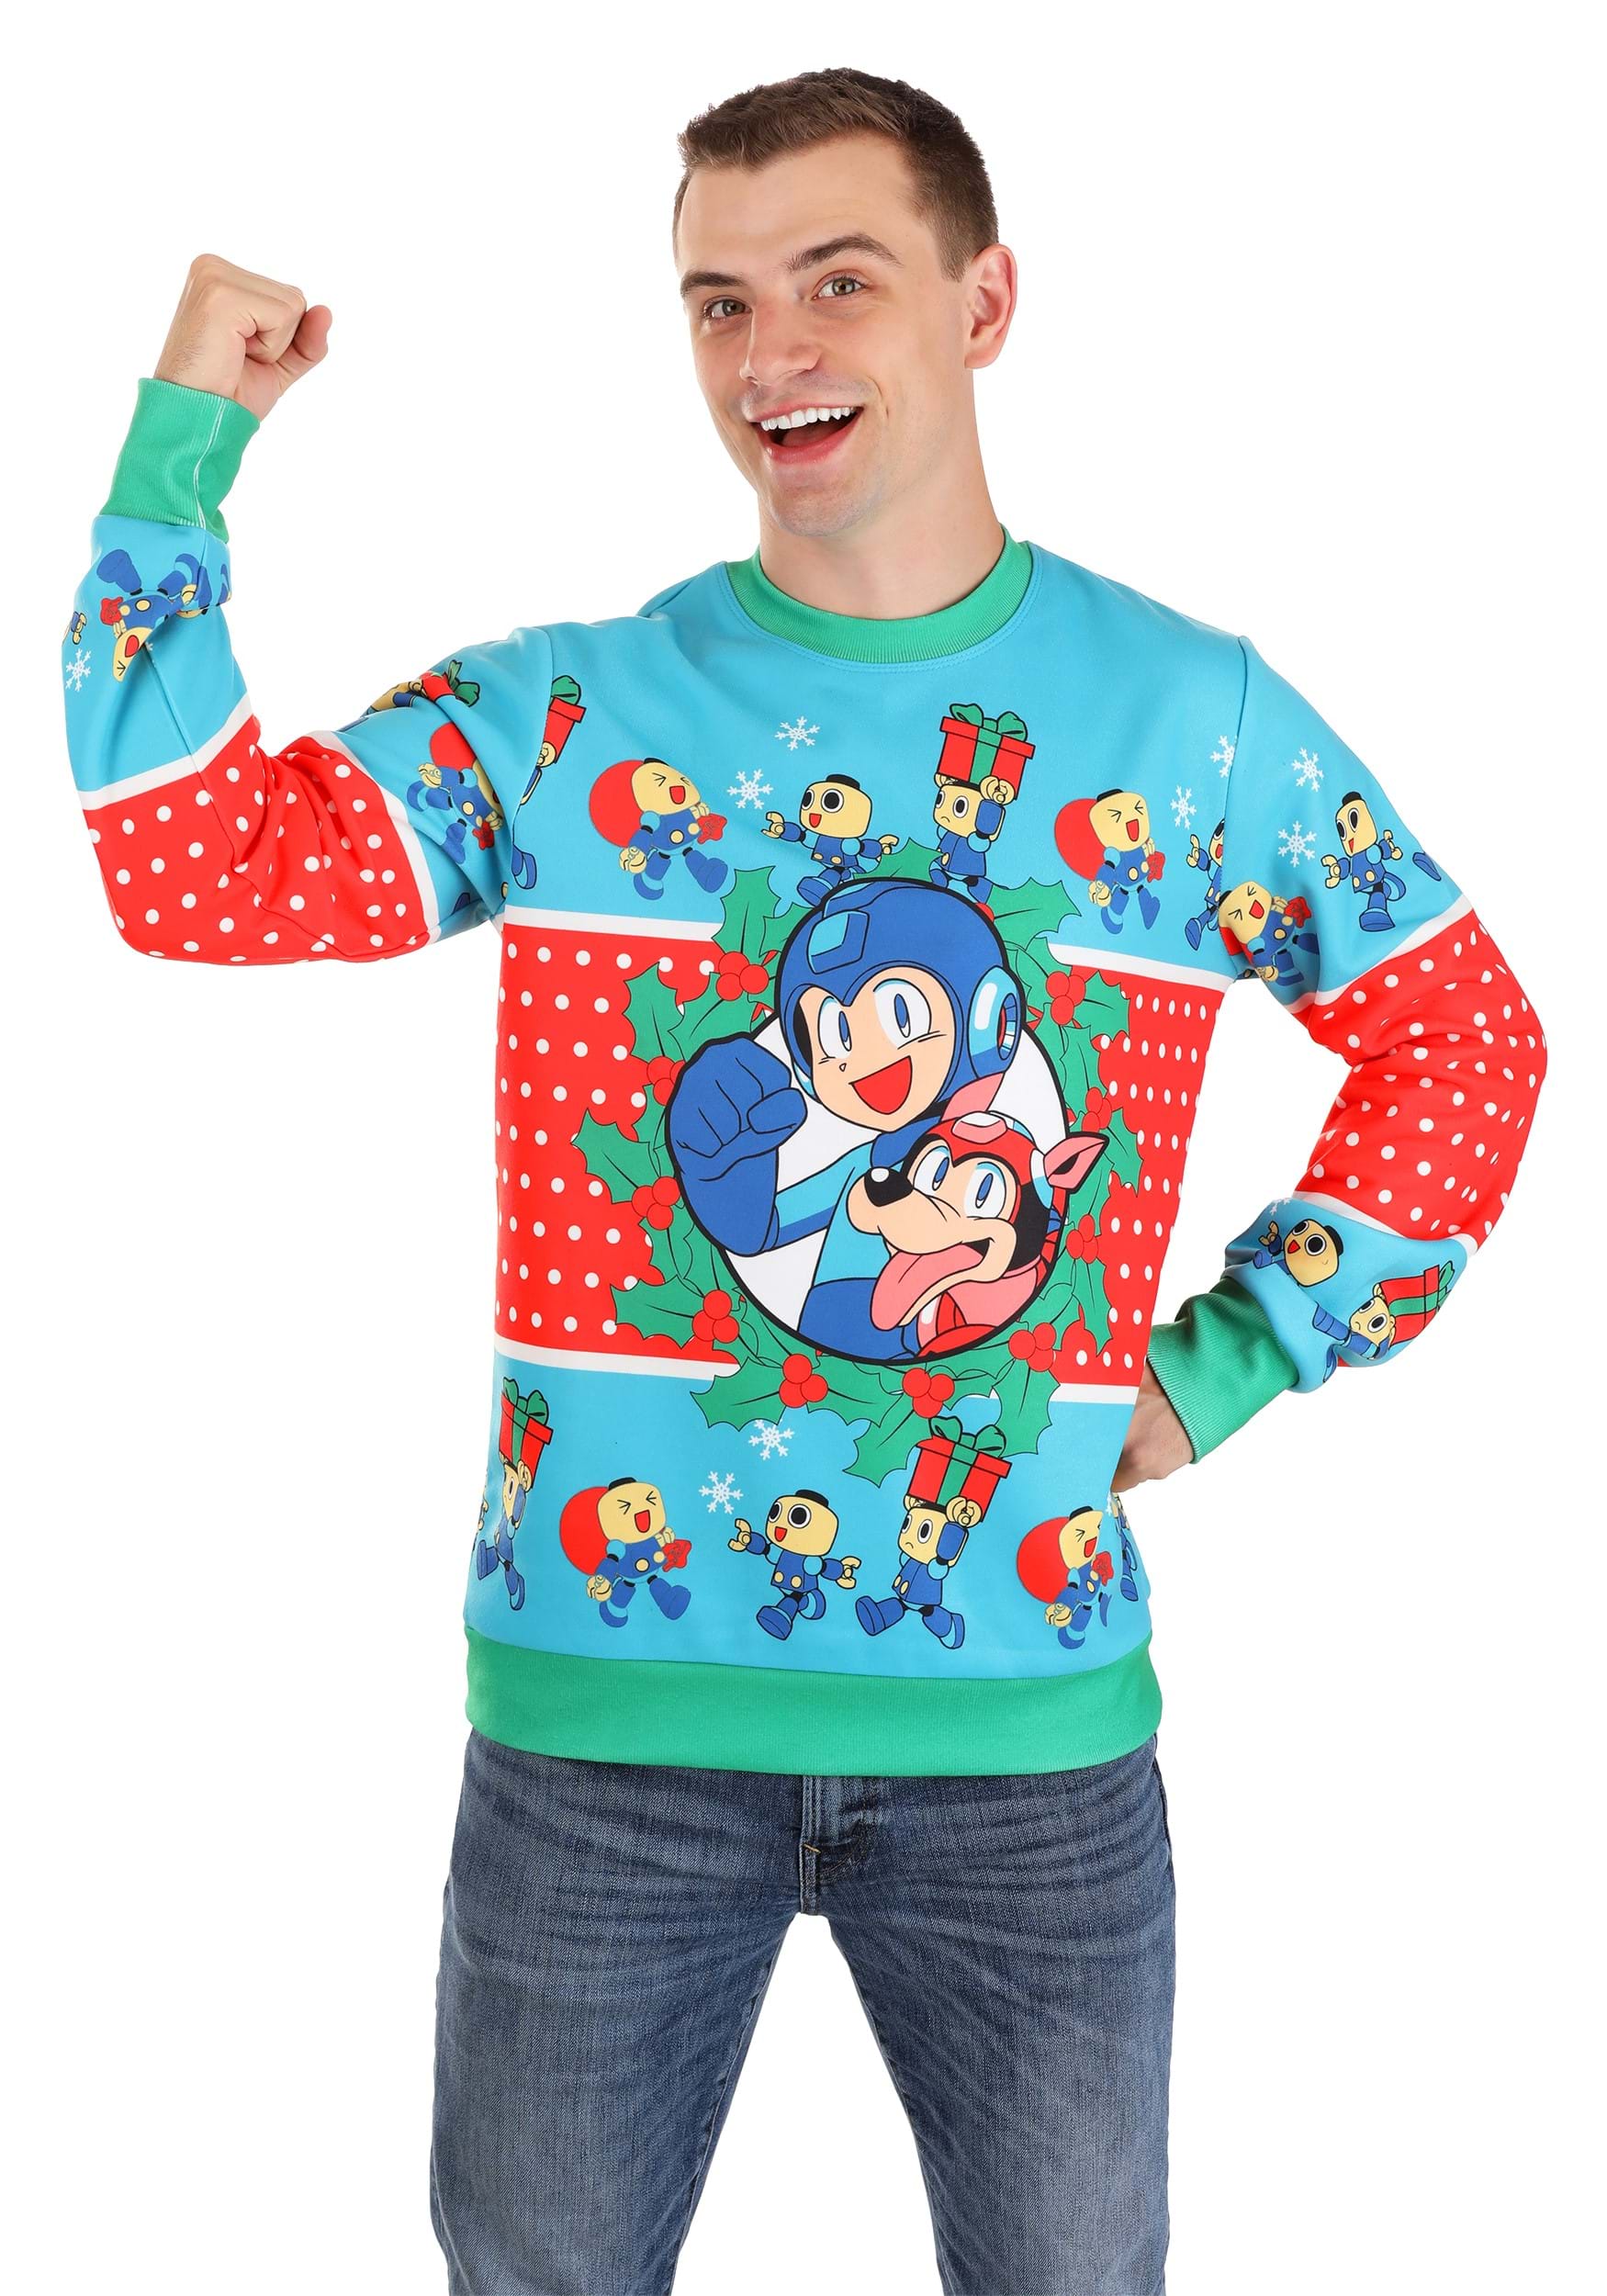 Mega Man Adult Christmas Sweater